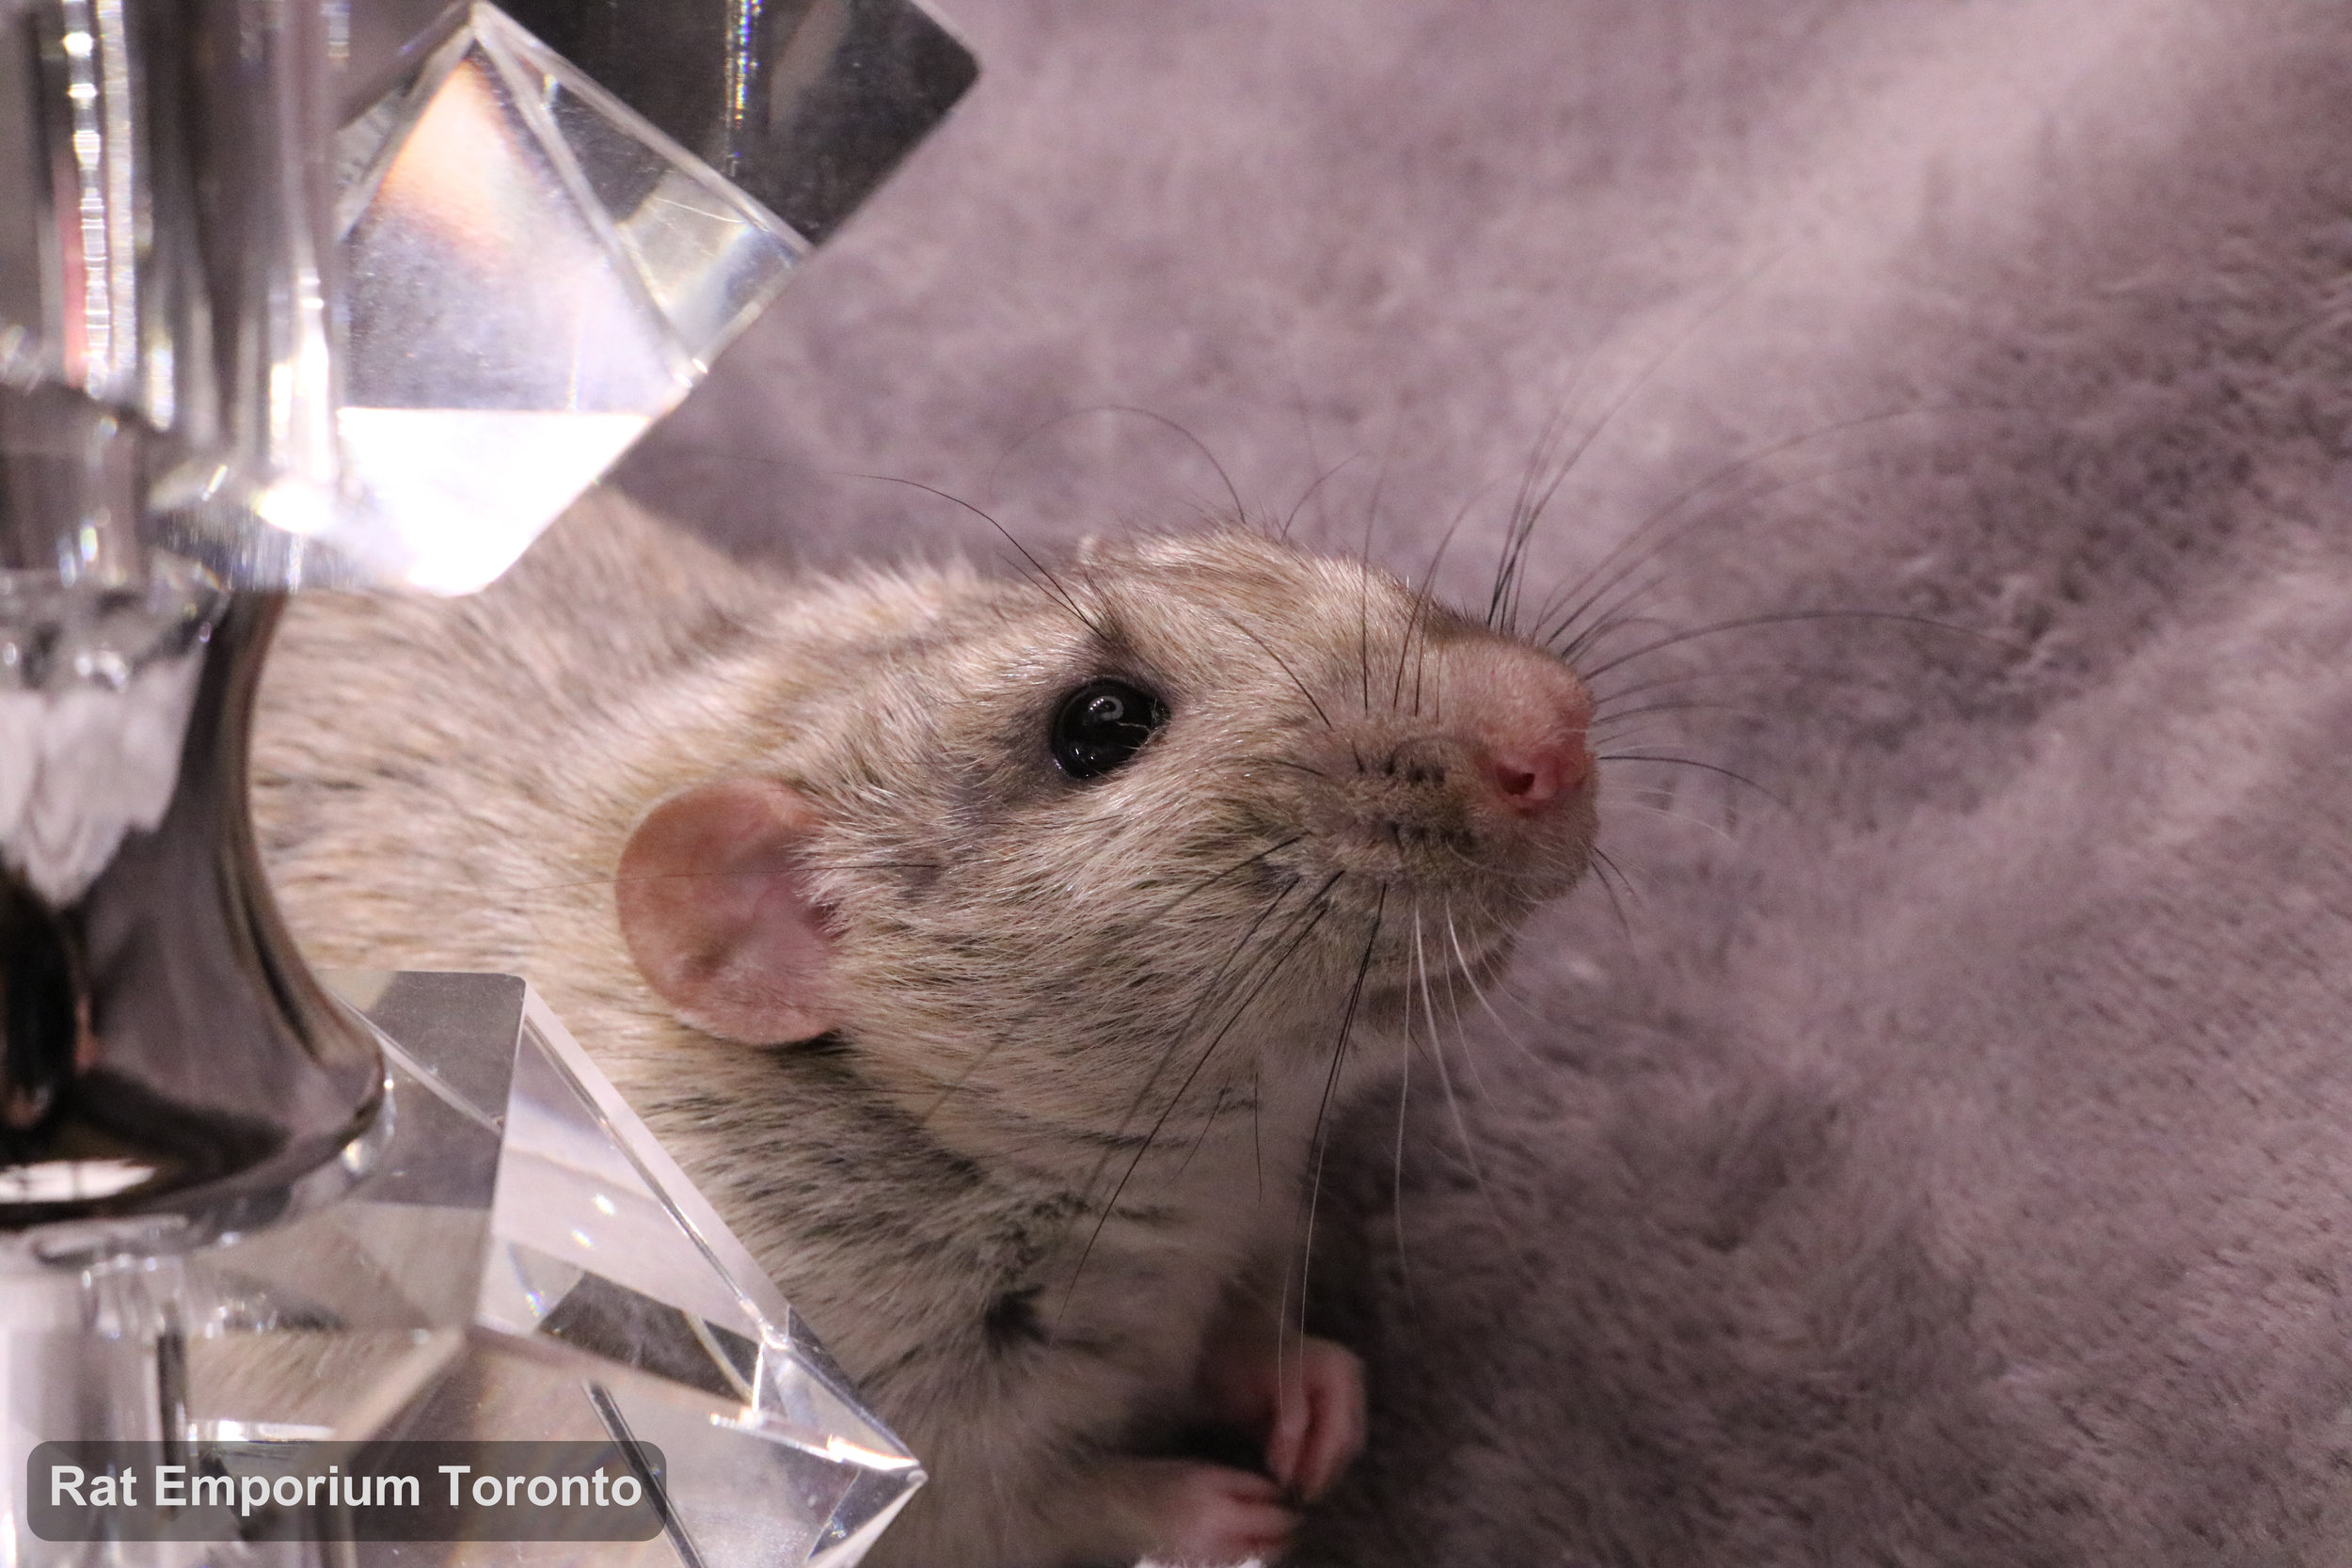 Trace, my silvermane agouti dumbo rat - born and raised at the Rat Emporium Toronto - adopt pet rats - rat breeder